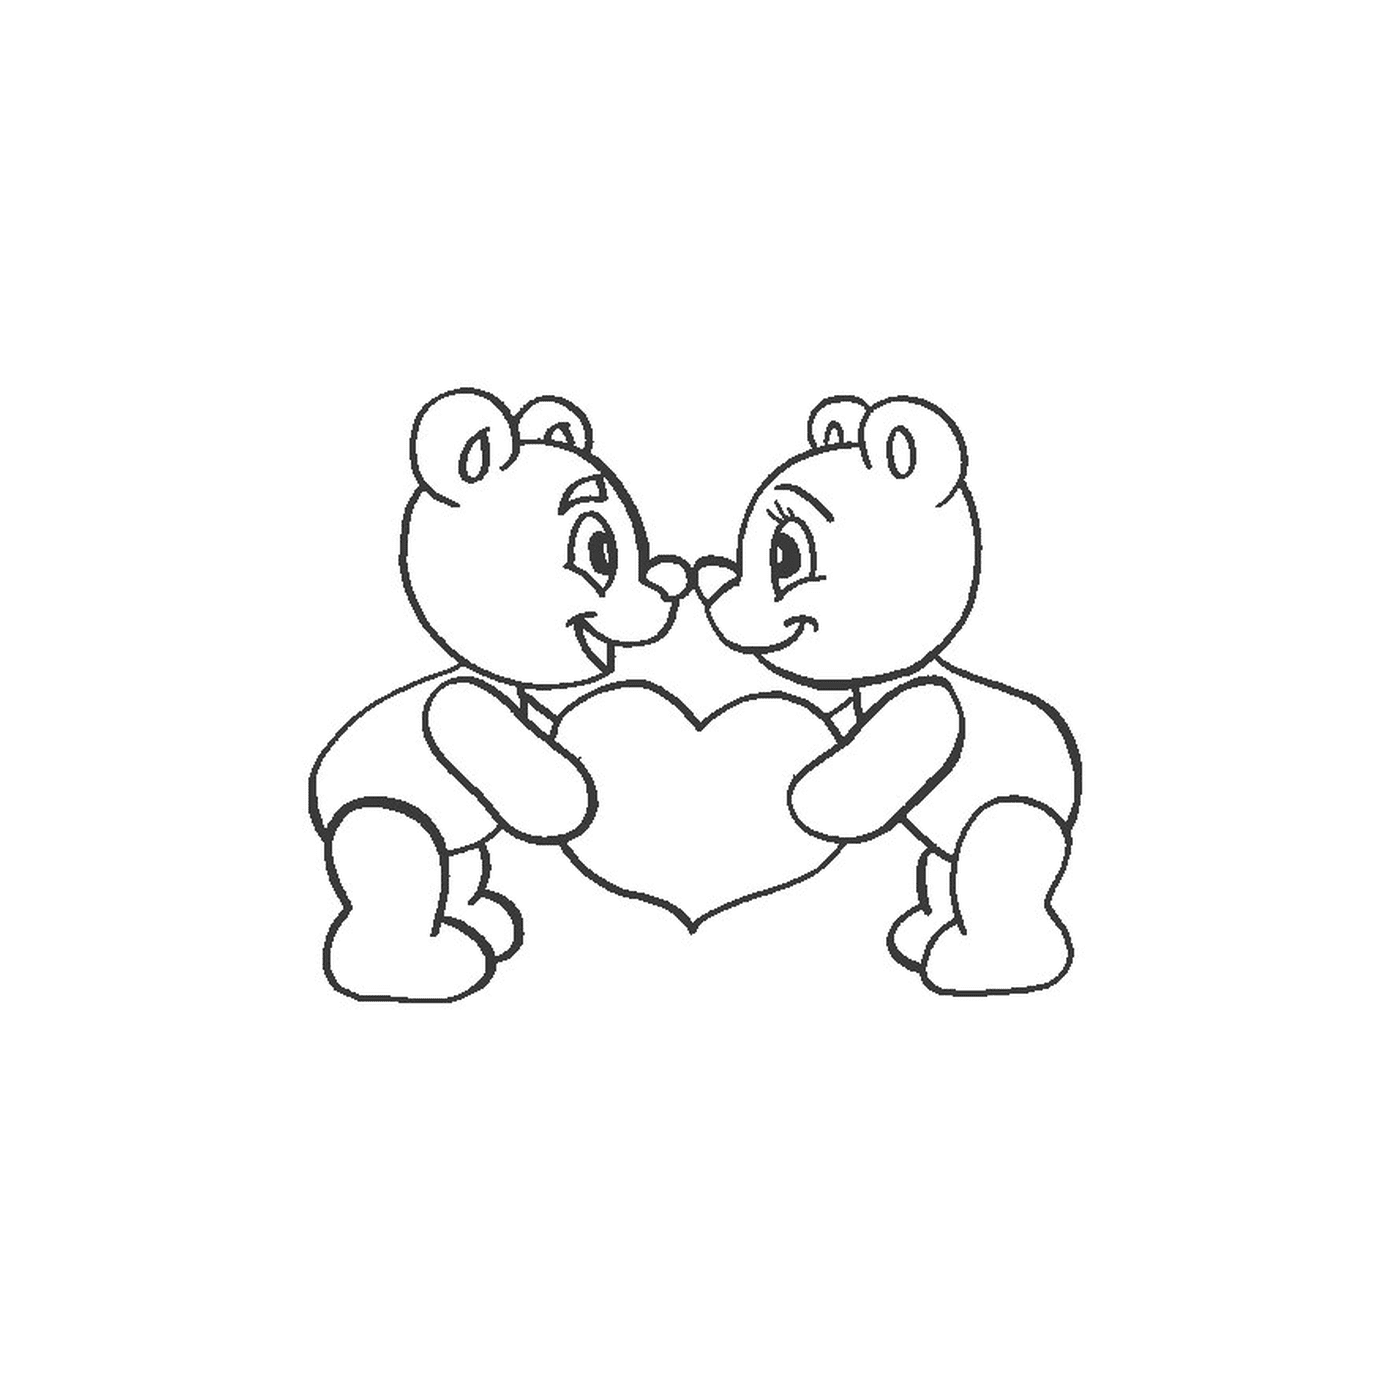  Dois ursos de pelúcia segurando um coração em suas mãos 